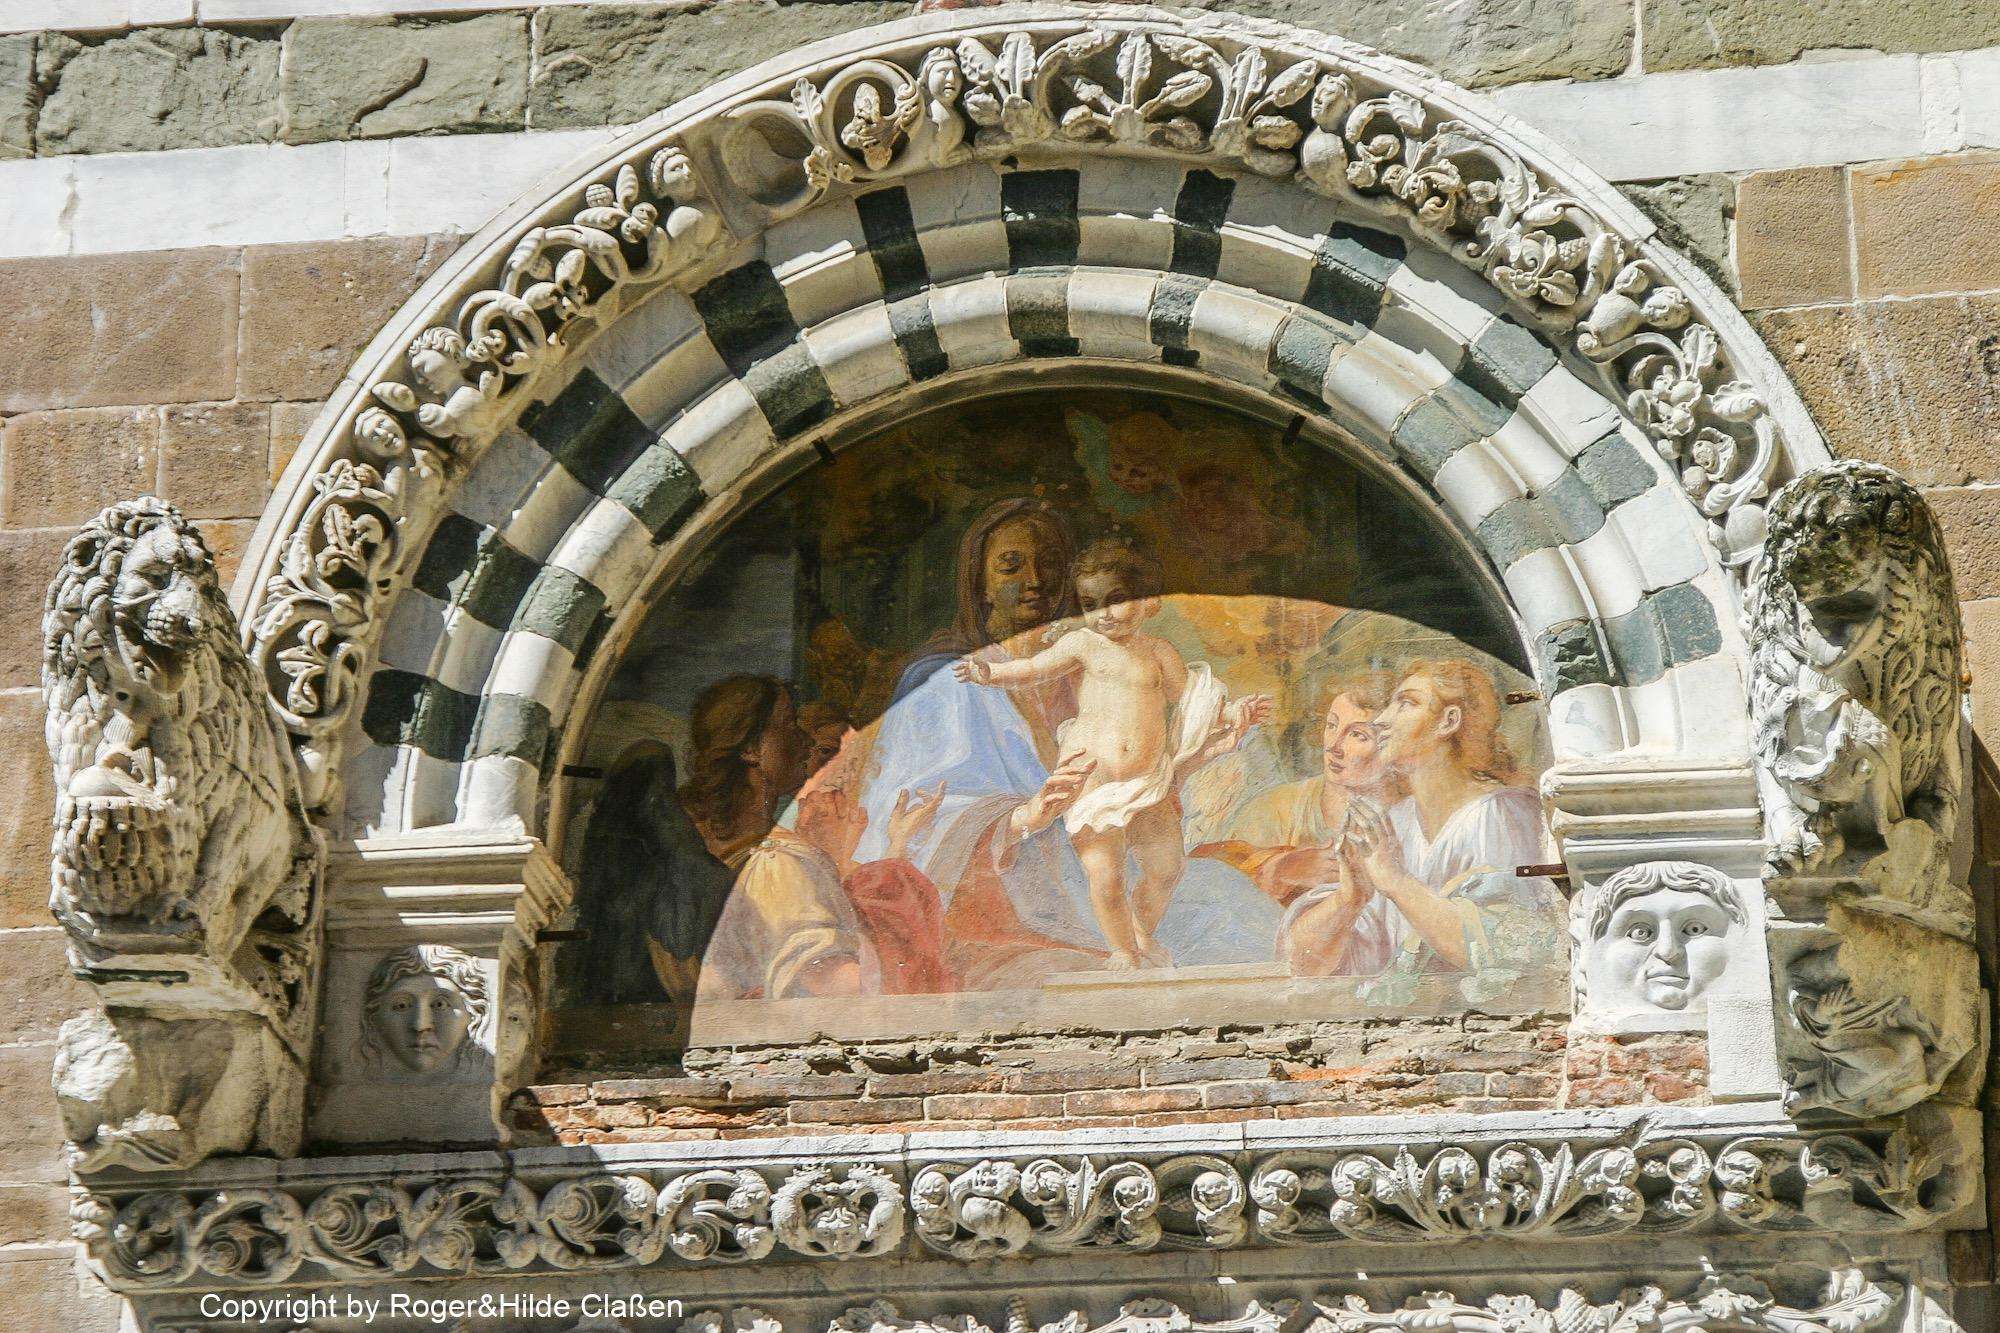 Das Relief über dem Portal Kirche San Giusto. Ein fast identisches Relief findet man auch am Portal des Markusdom in Venedig.